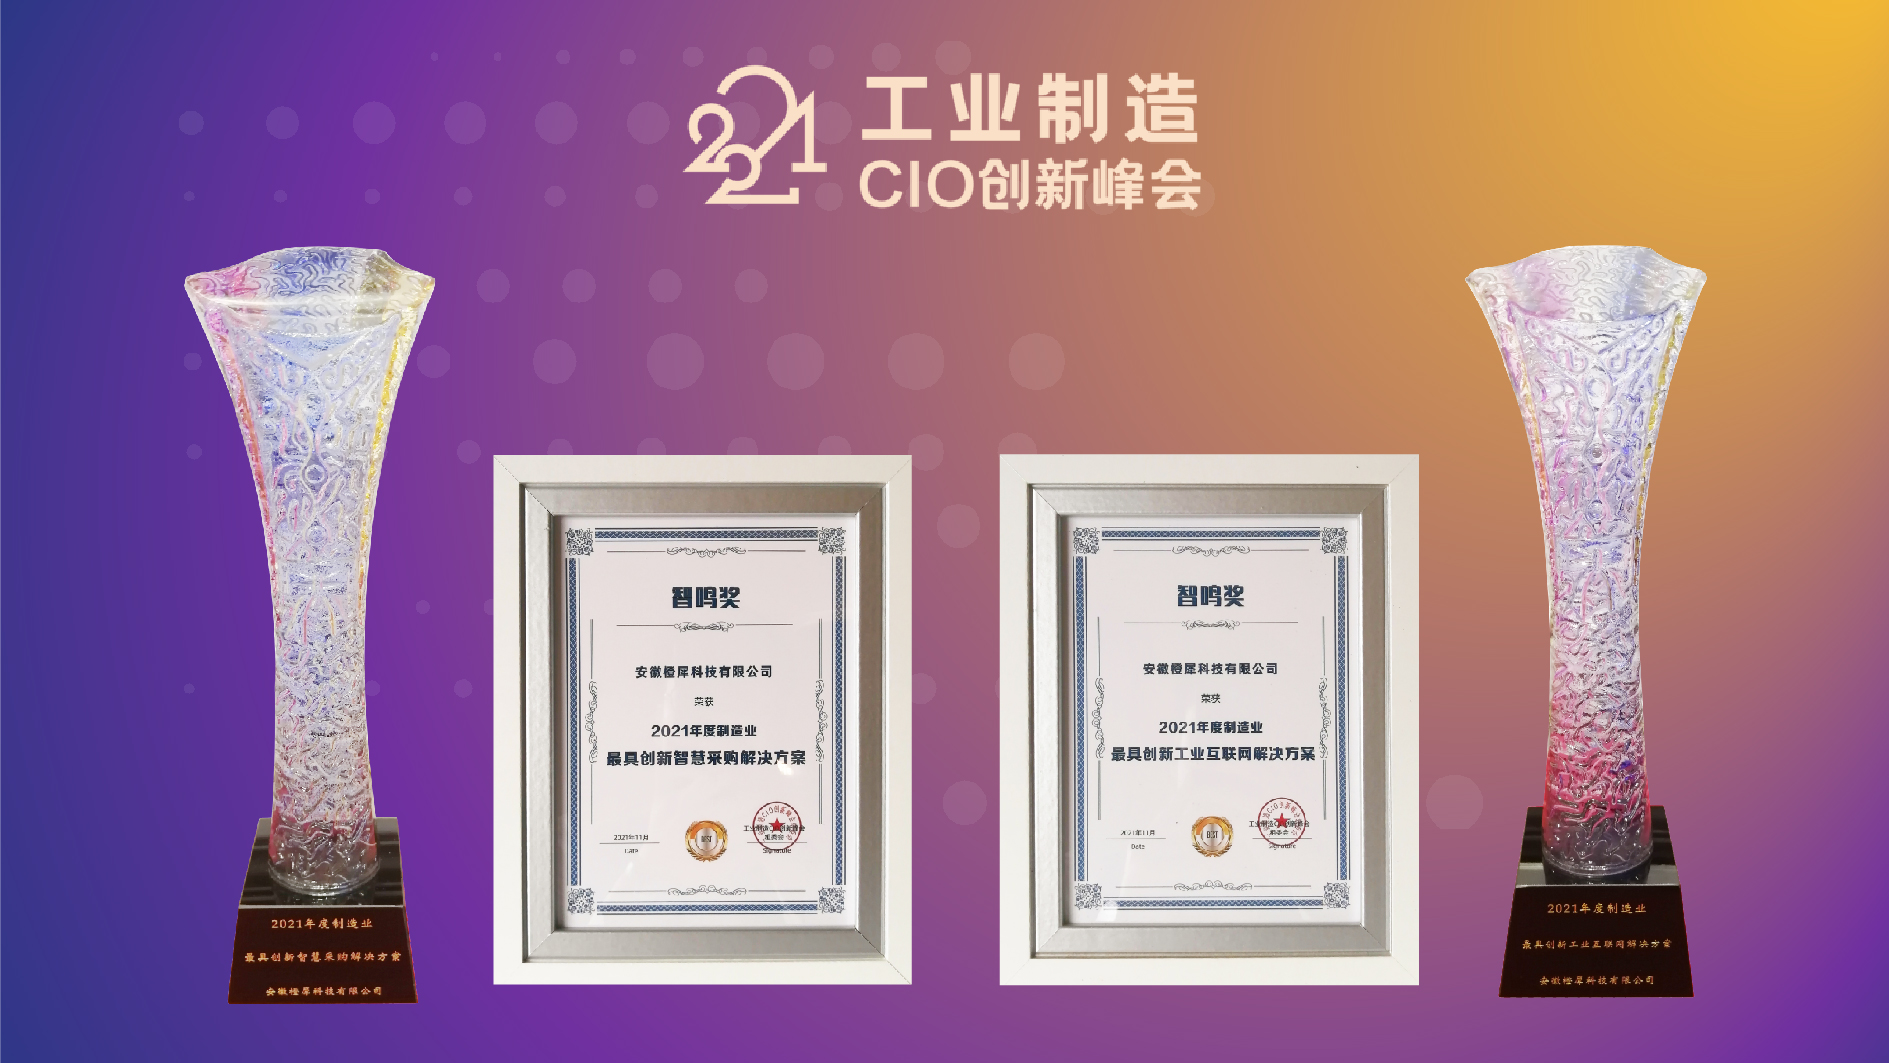 引领数字工业变革 橙犀工业科技荣获2021工业制造CIO创新峰会2项大奖(图1)